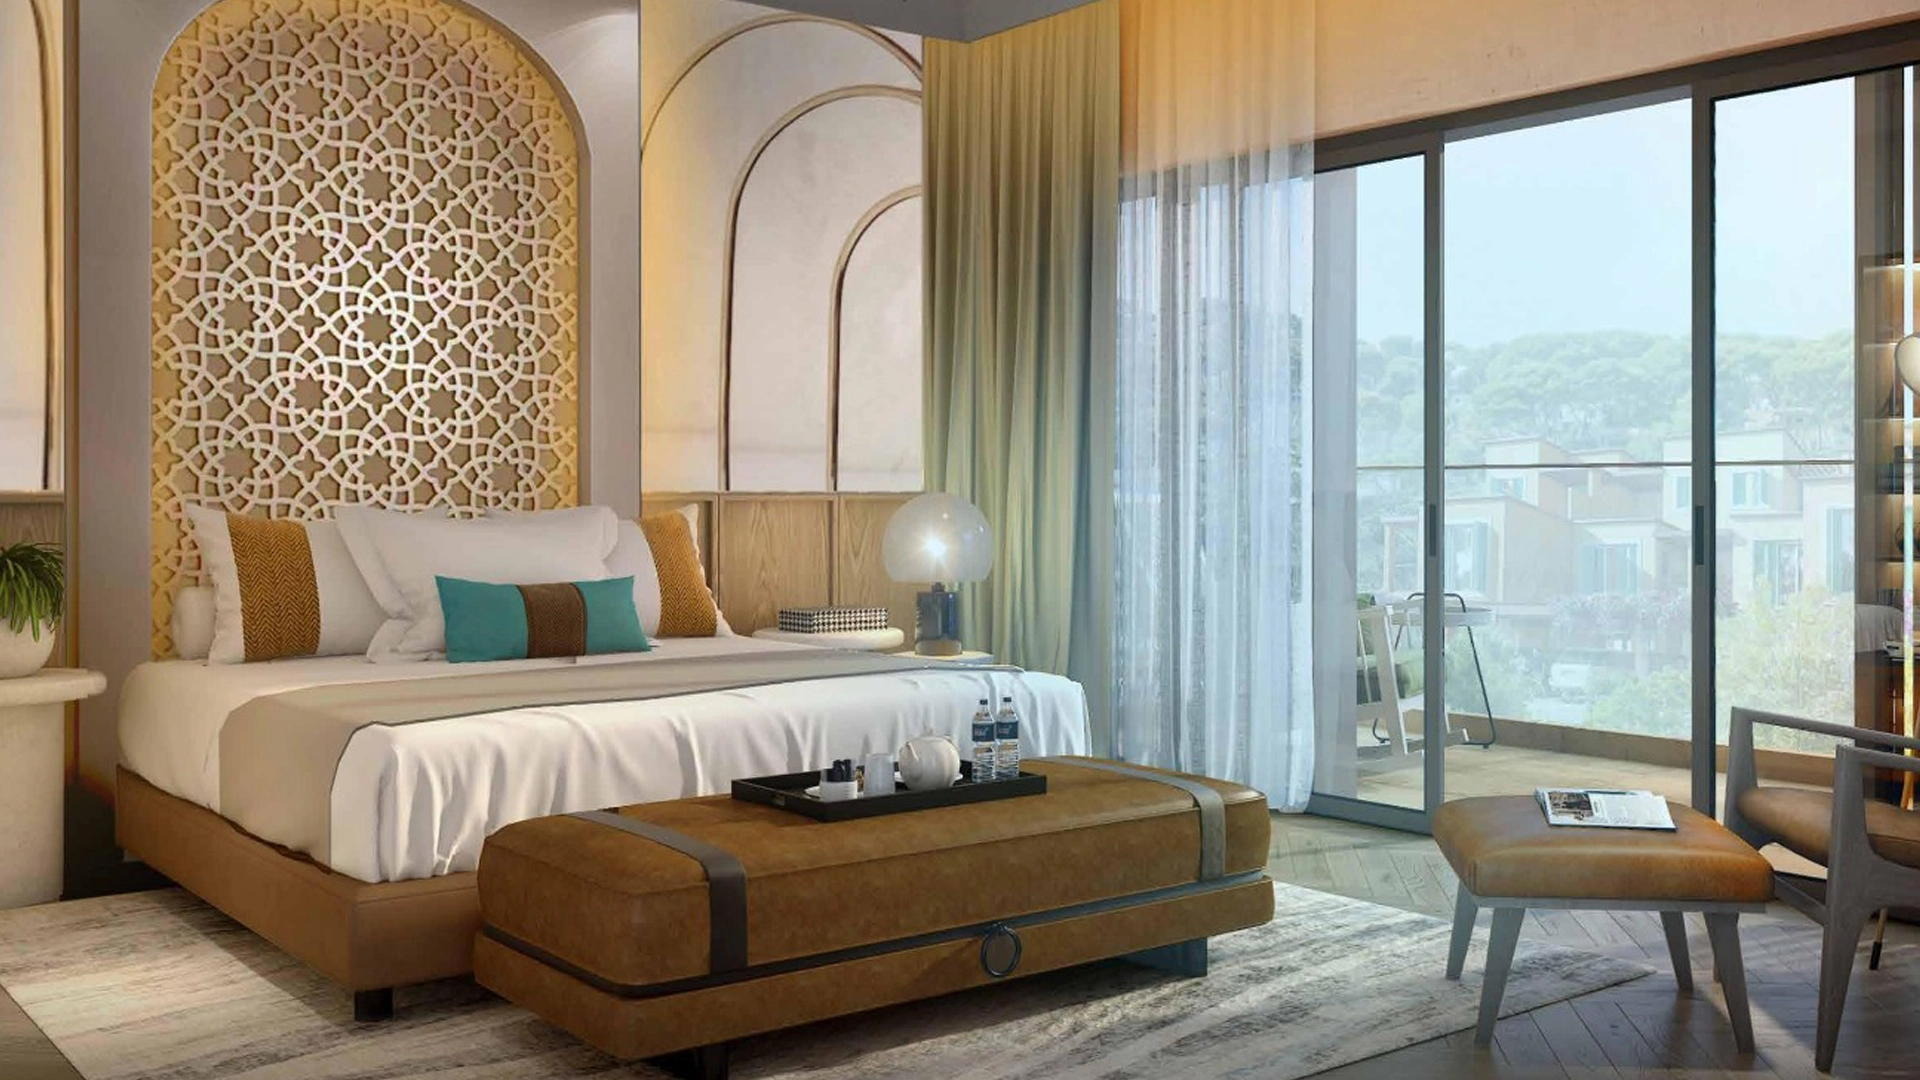 Edge-Realty-7 Bedroom Villa in Morocco, DAMAC Lagoons